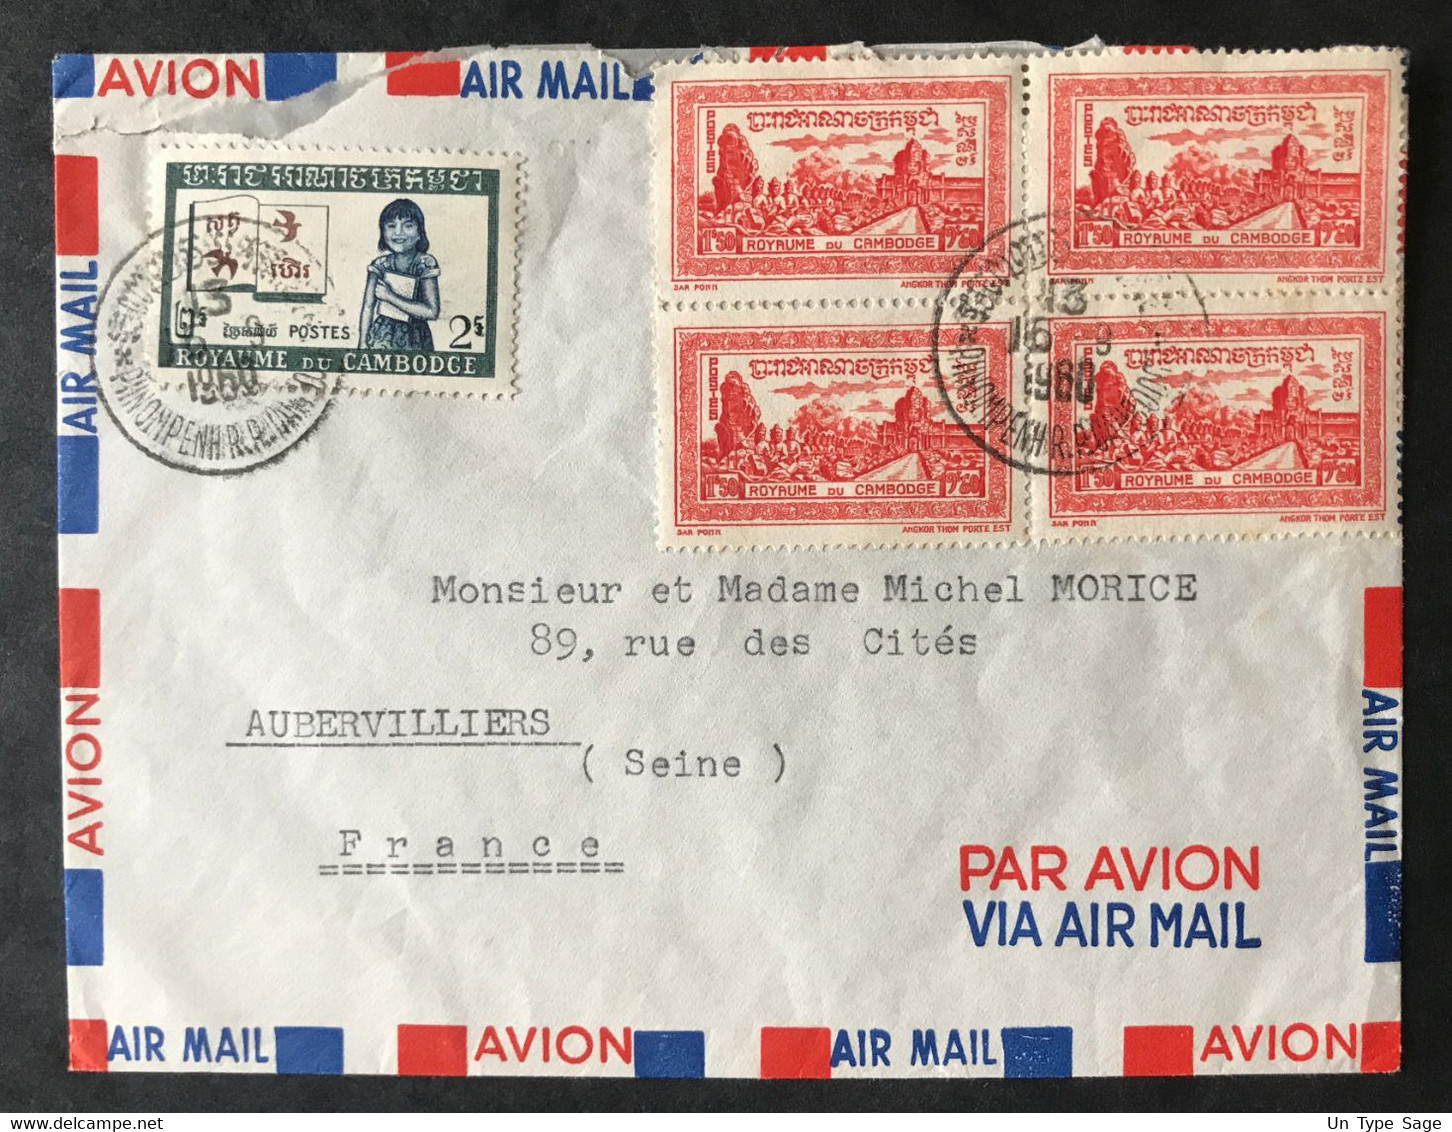 Cambodge N°29 (x4) Et N°92 Sur Enveloppe De Phnom Penh Pour Aubervilliers 16.9.1960 - (B3236) - Cambodia